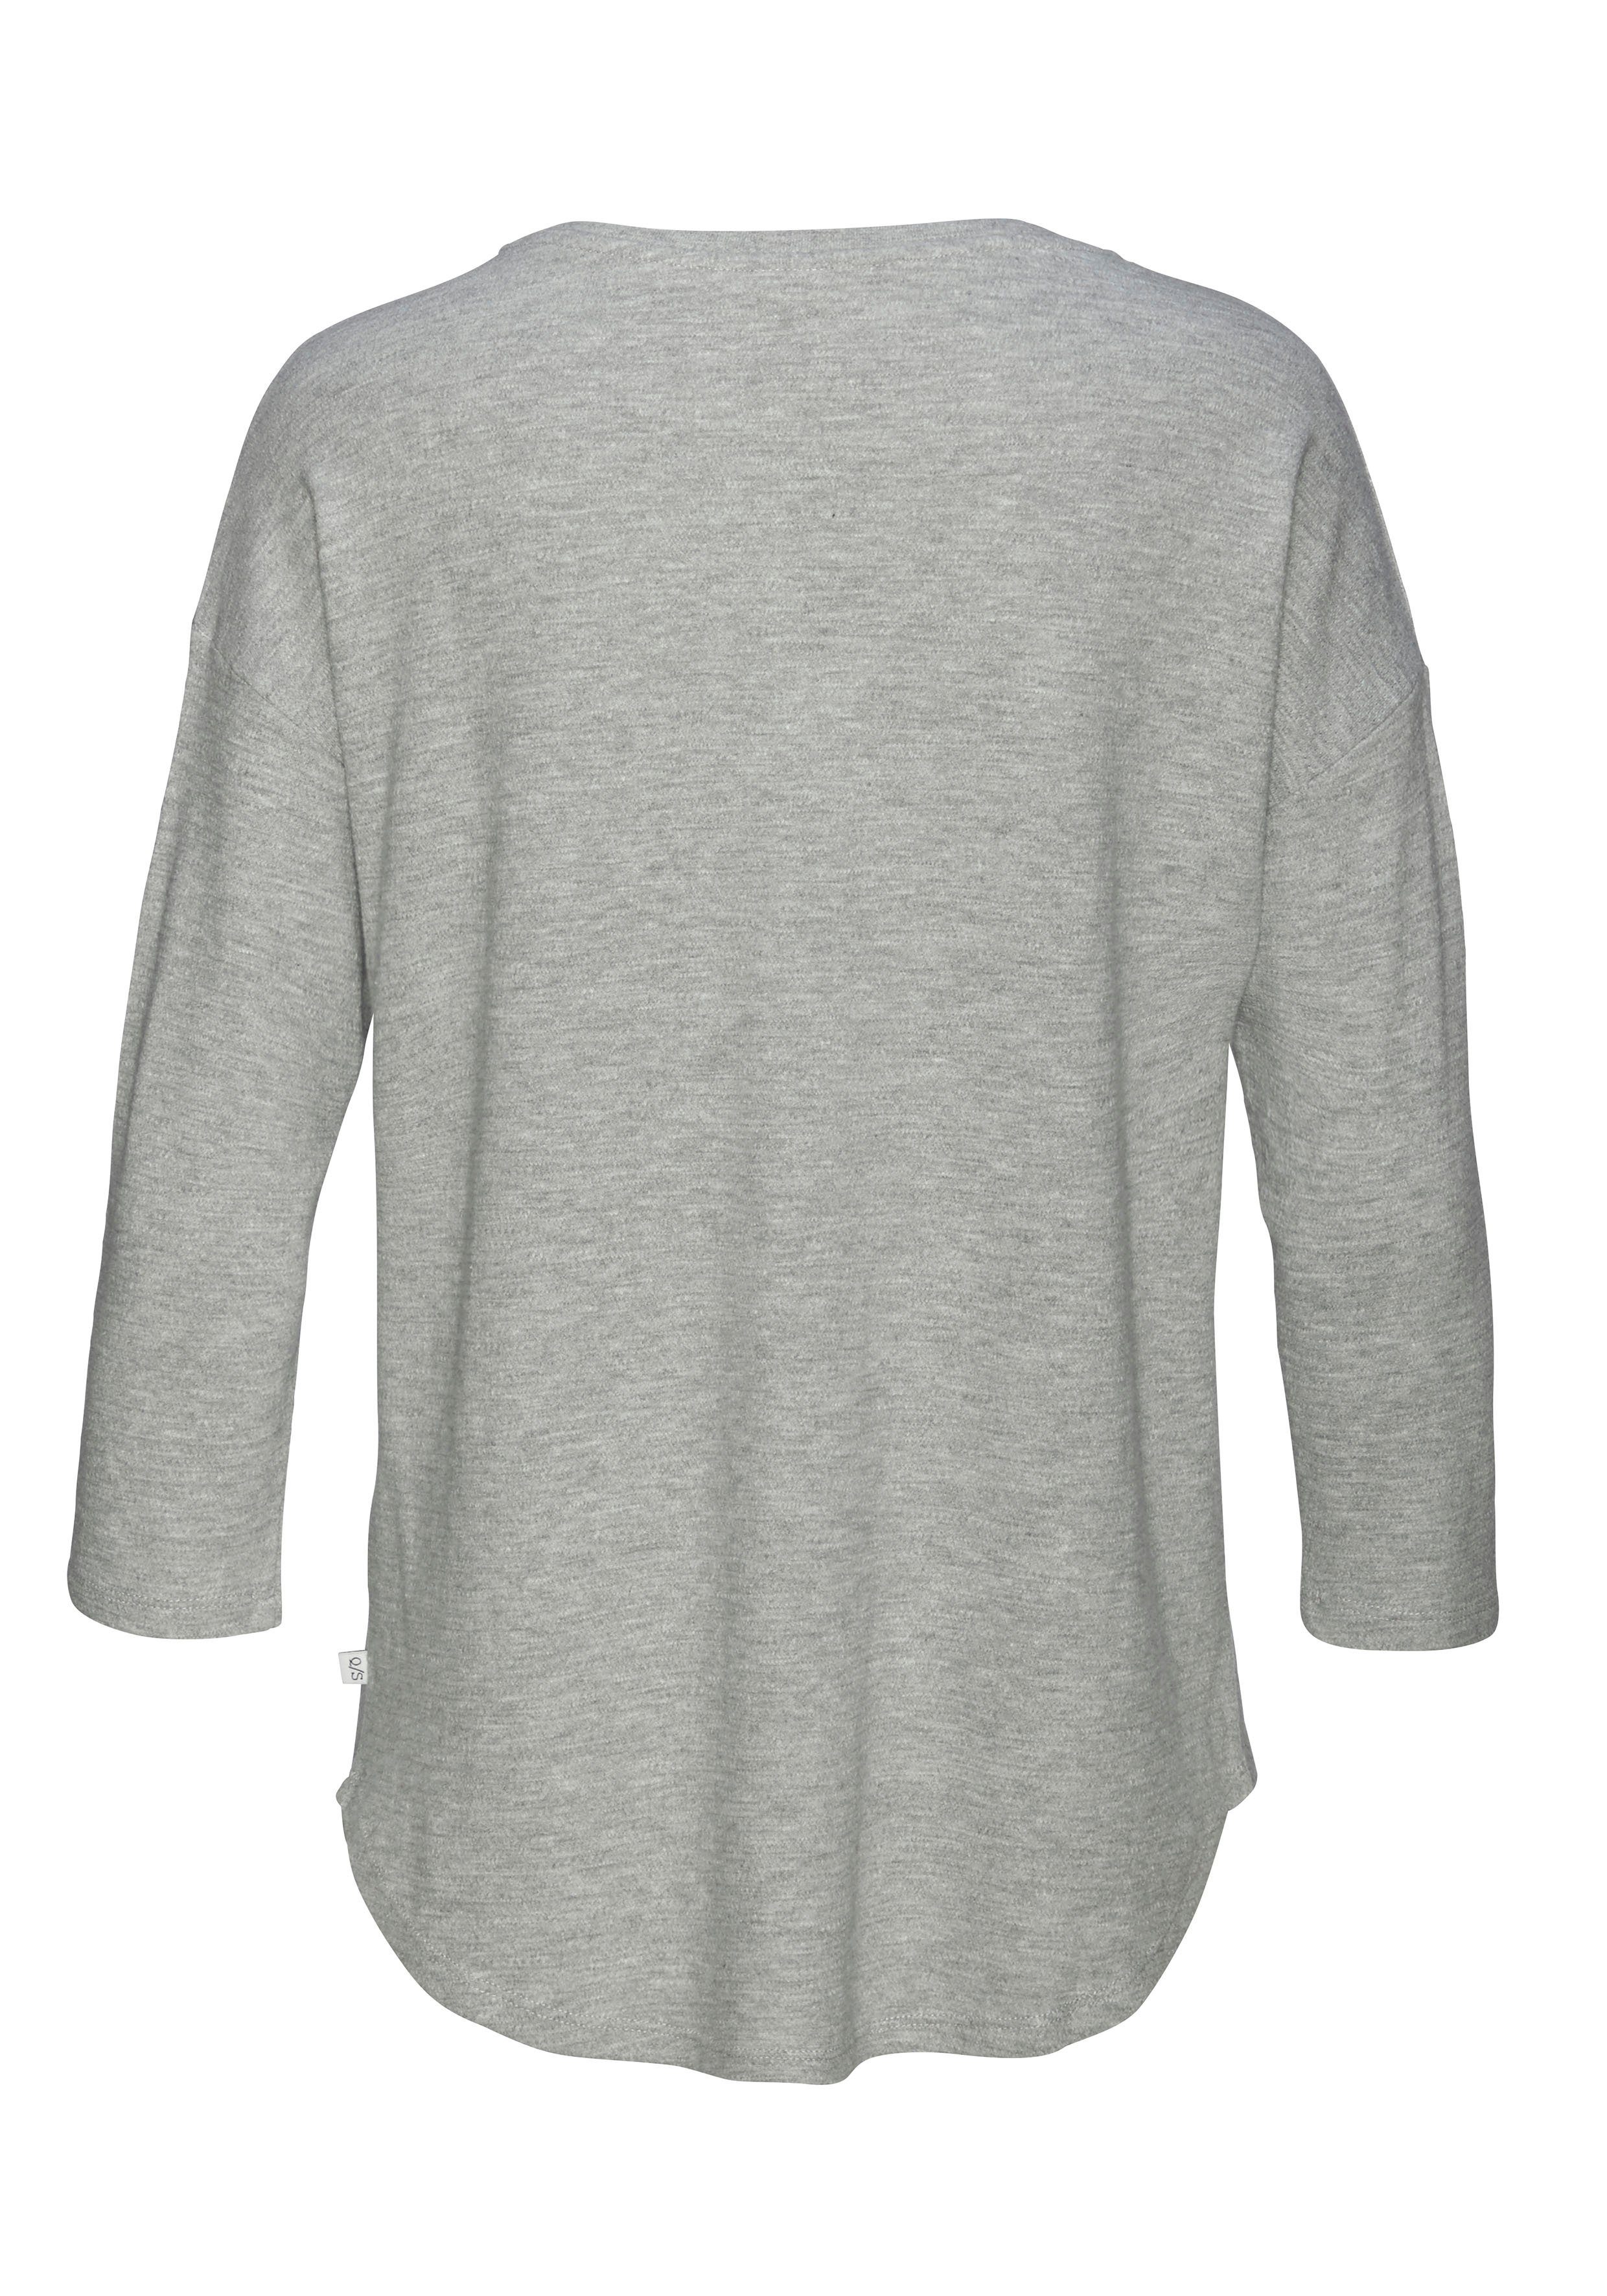 3/4-Arm-Shirt überschnittenen grau-meliert QS Schultern mit